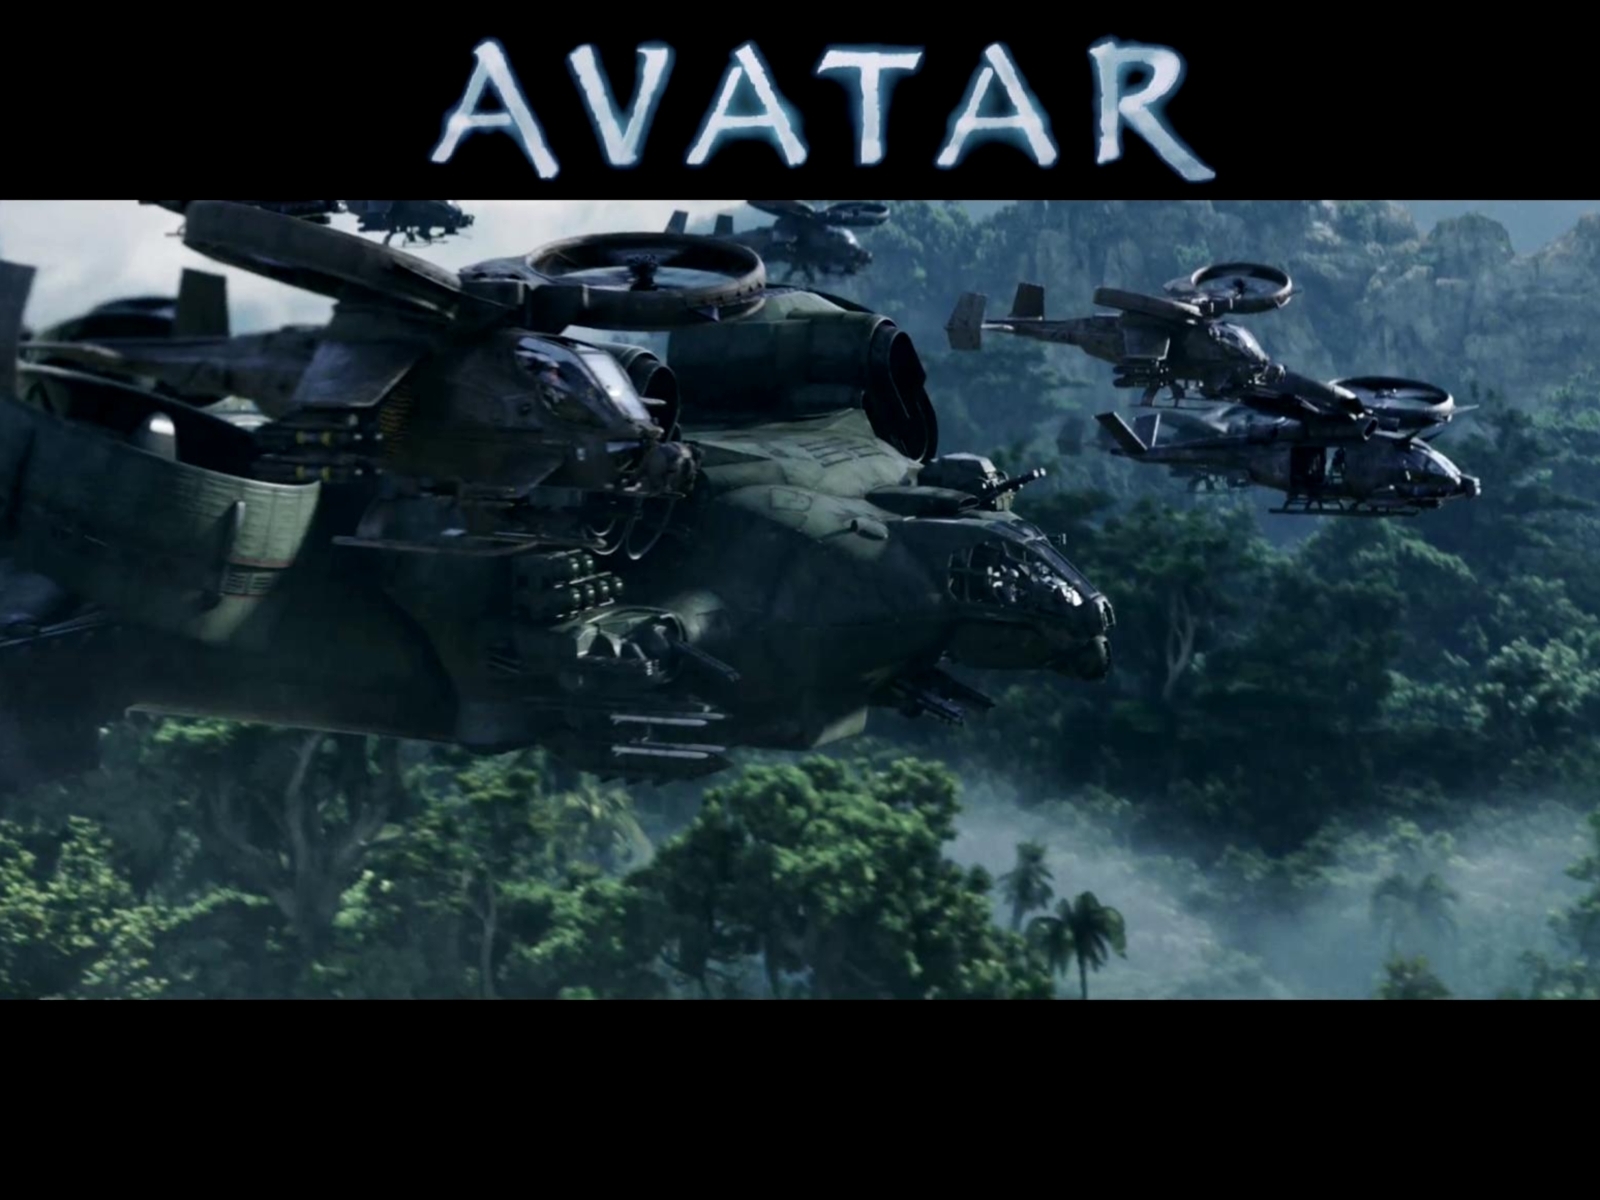 Скачать обои бесплатно Аватар (Avatar), Кино картинка на рабочий стол ПК